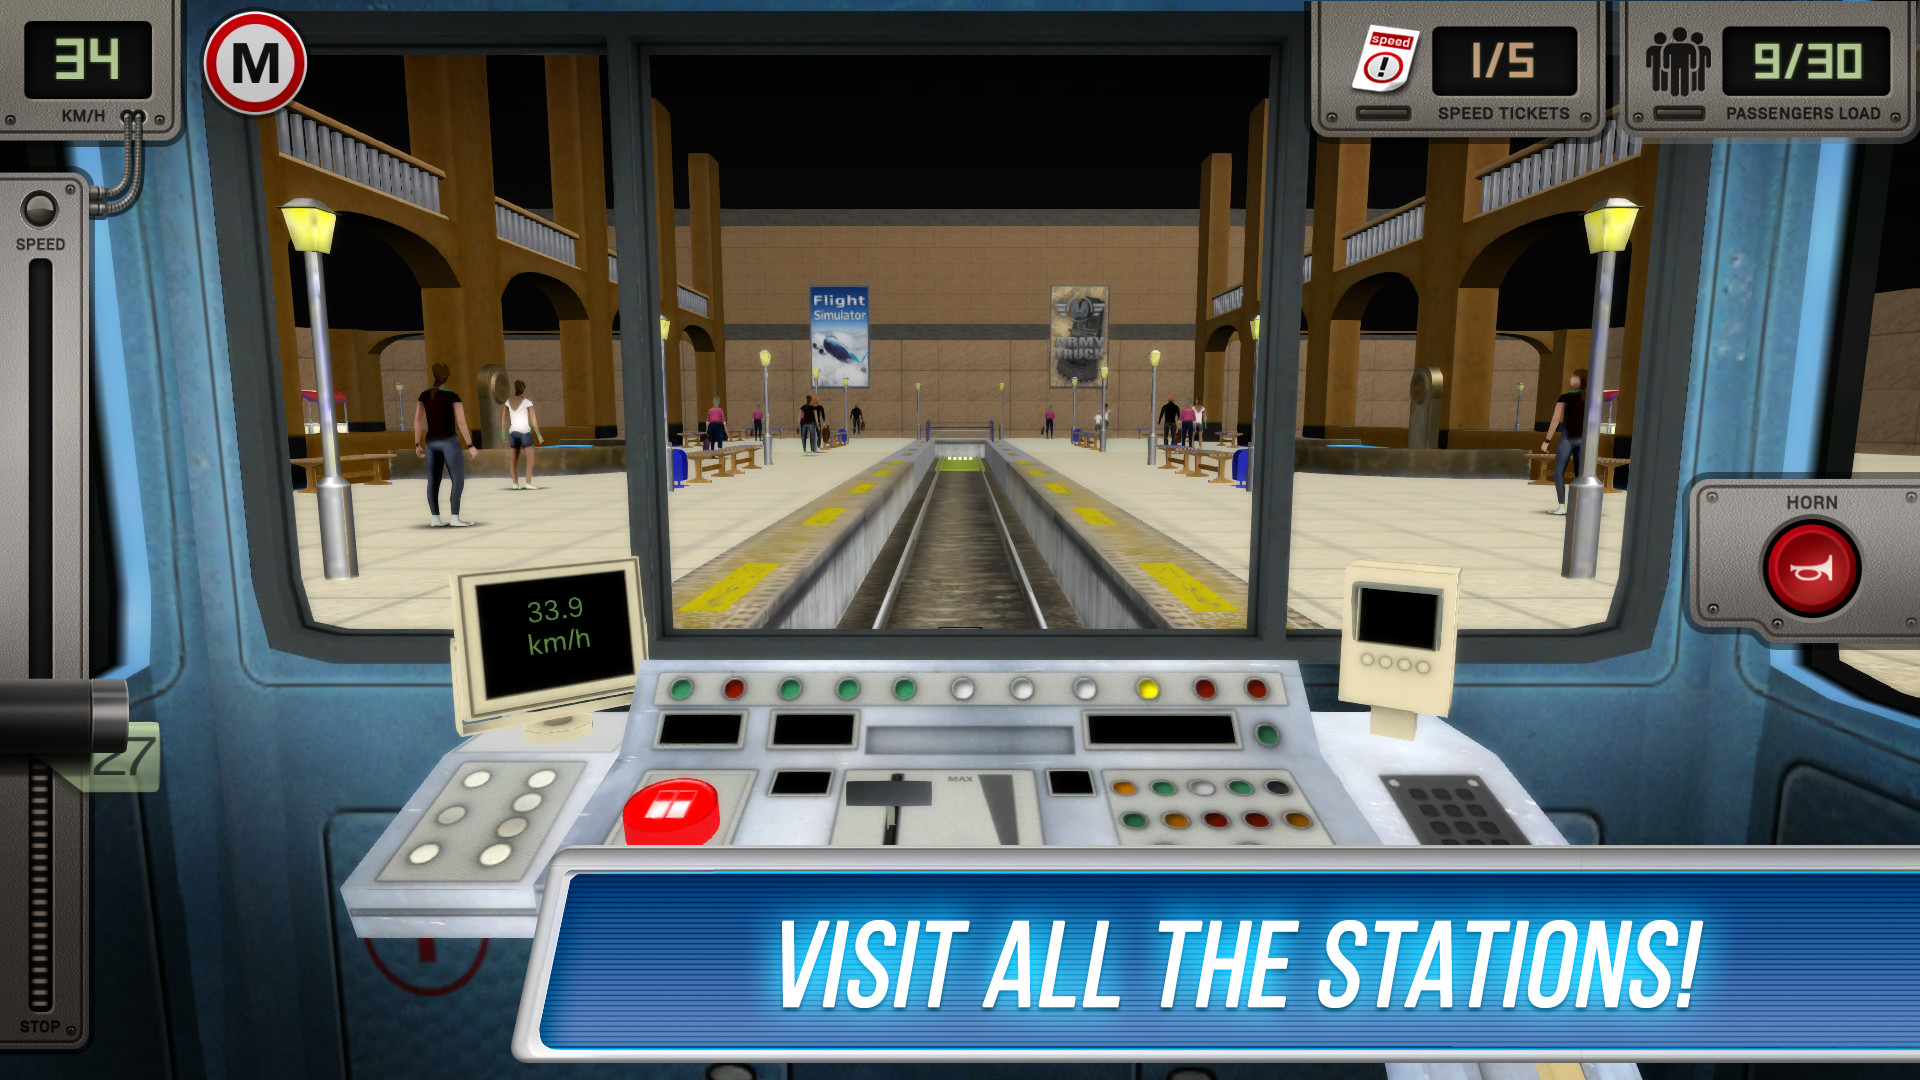 Как научиться играть в метро. Сабвей симулятор 3д метро. Симулятор метро ps4. Русич Subway Simulator 3d. Метро симулятор 3д - поезда.